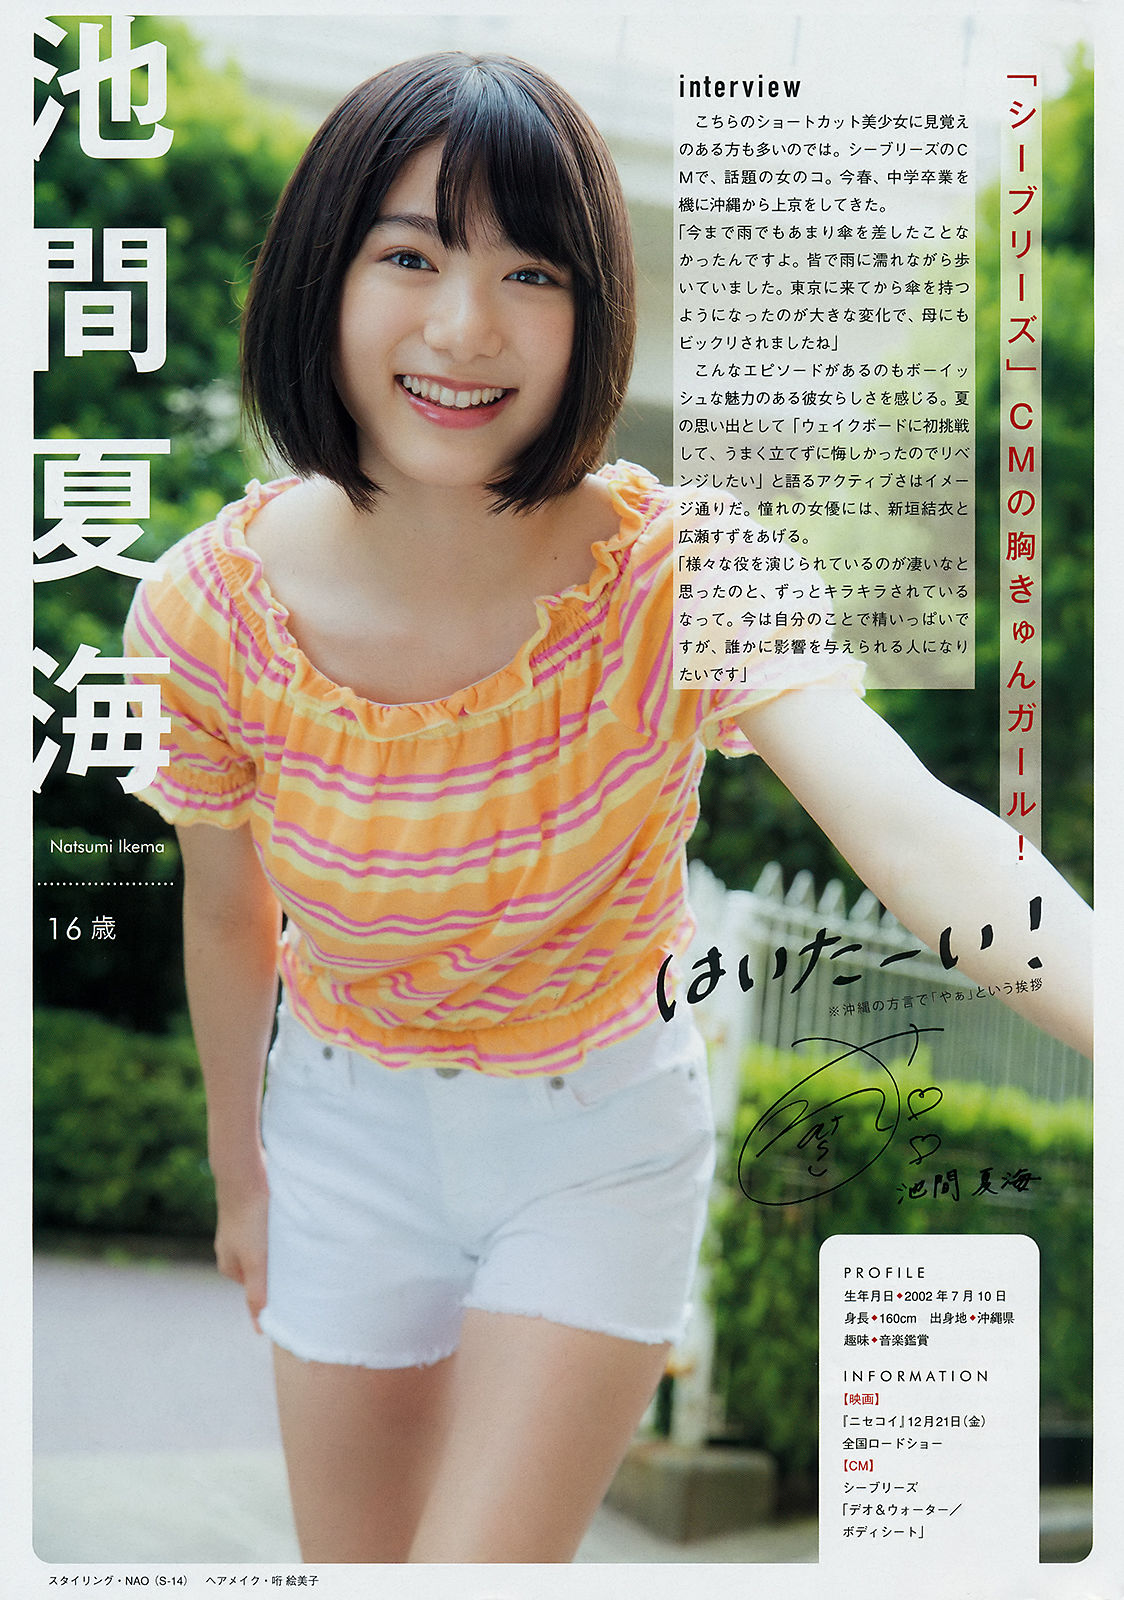 [Young Magazine] Hinako Sano 2018 No.45 Photograph Page 7 No.3ba2b9